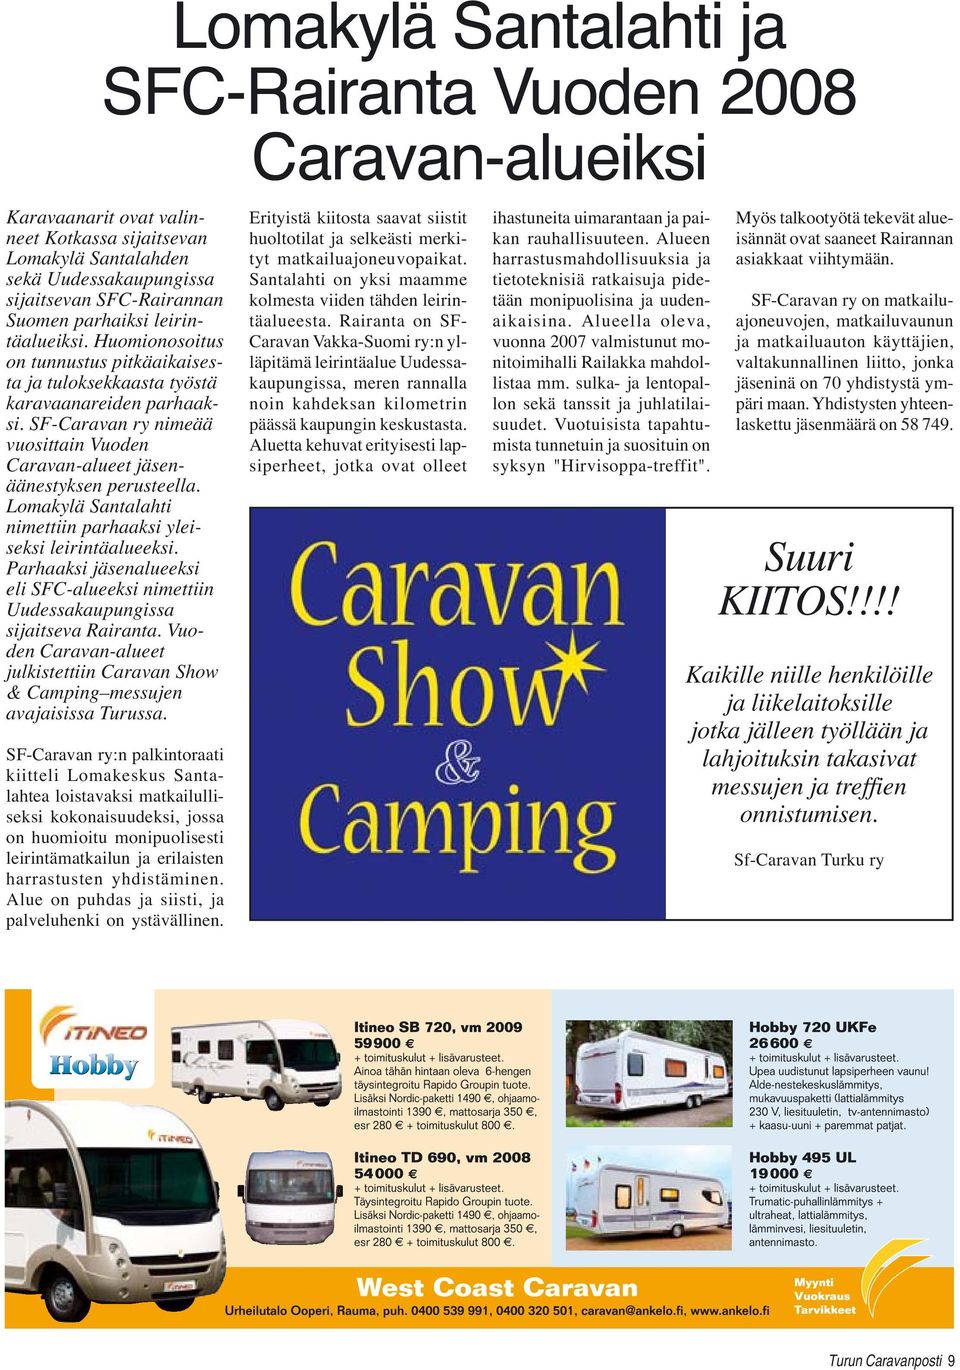 SF-Caravan ry nimeää vuosittain Vuoden Caravan-alueet jäsenäänestyksen perusteella. Lomakylä Santalahti nimettiin parhaaksi yleiseksi leirintäalueeksi.